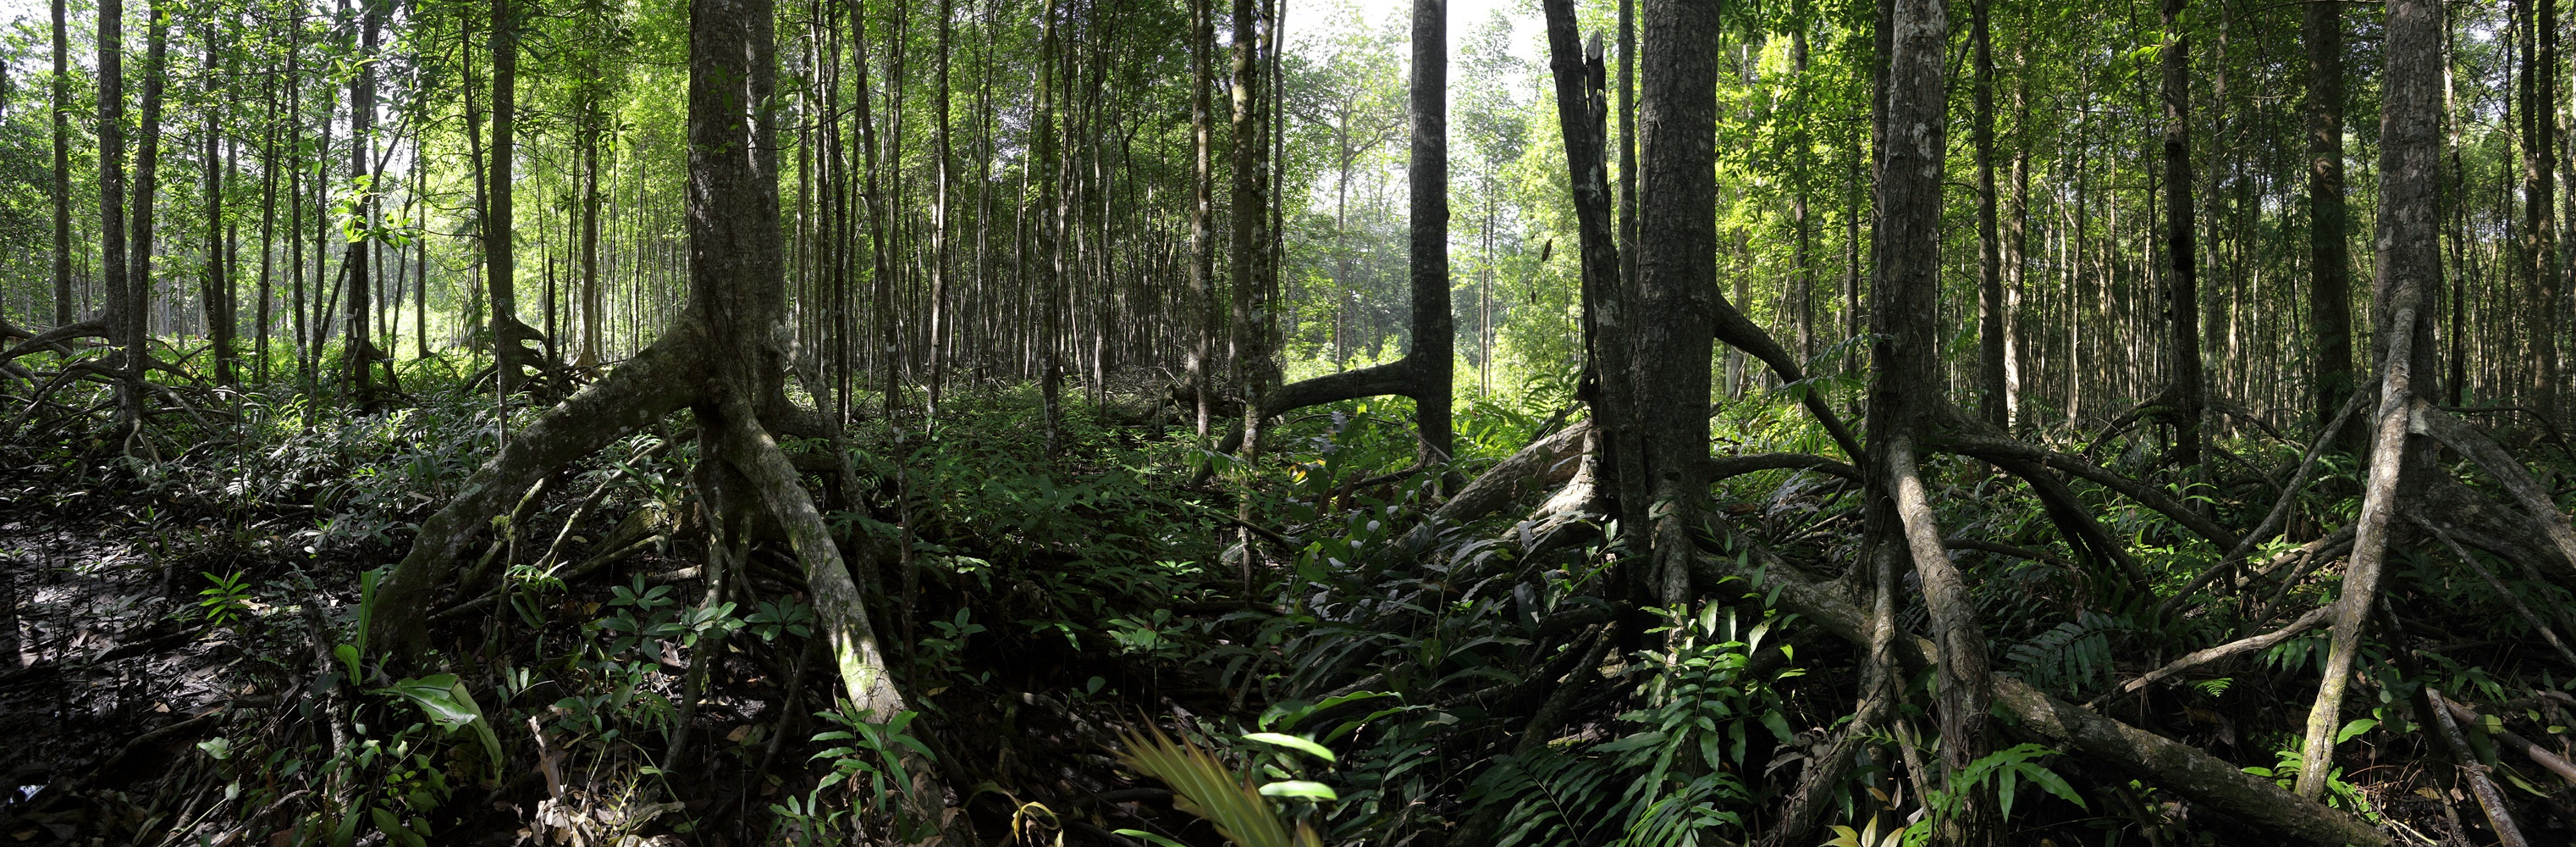 bill-hocker-mangroves-malaysia-2014